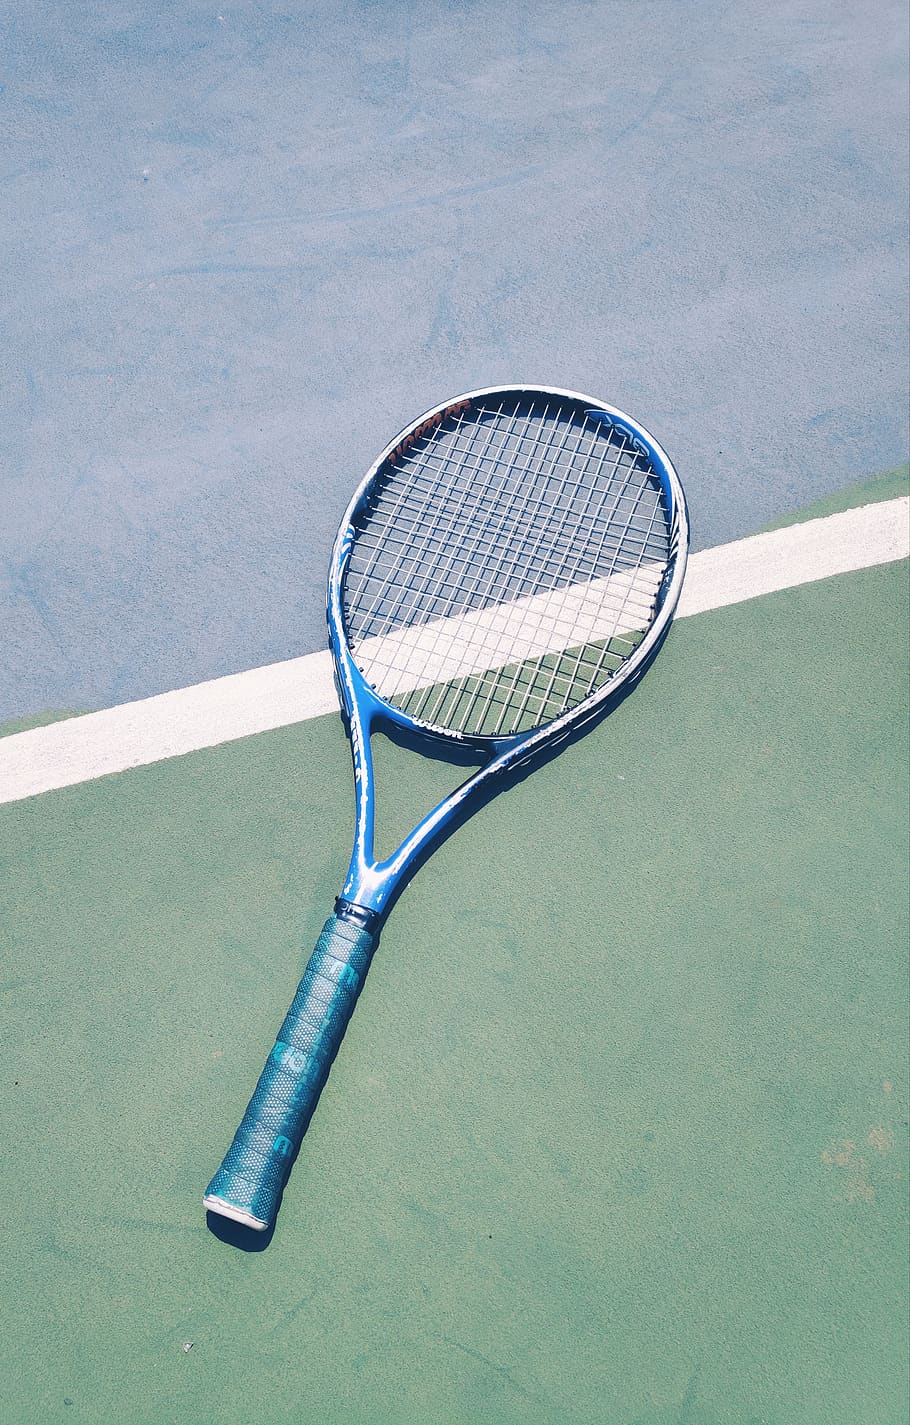  Tennis Hintergrundbild 910x1425. HD wallpaper: racket, tennis racket, china, changzhou shi, yun he lu, sports